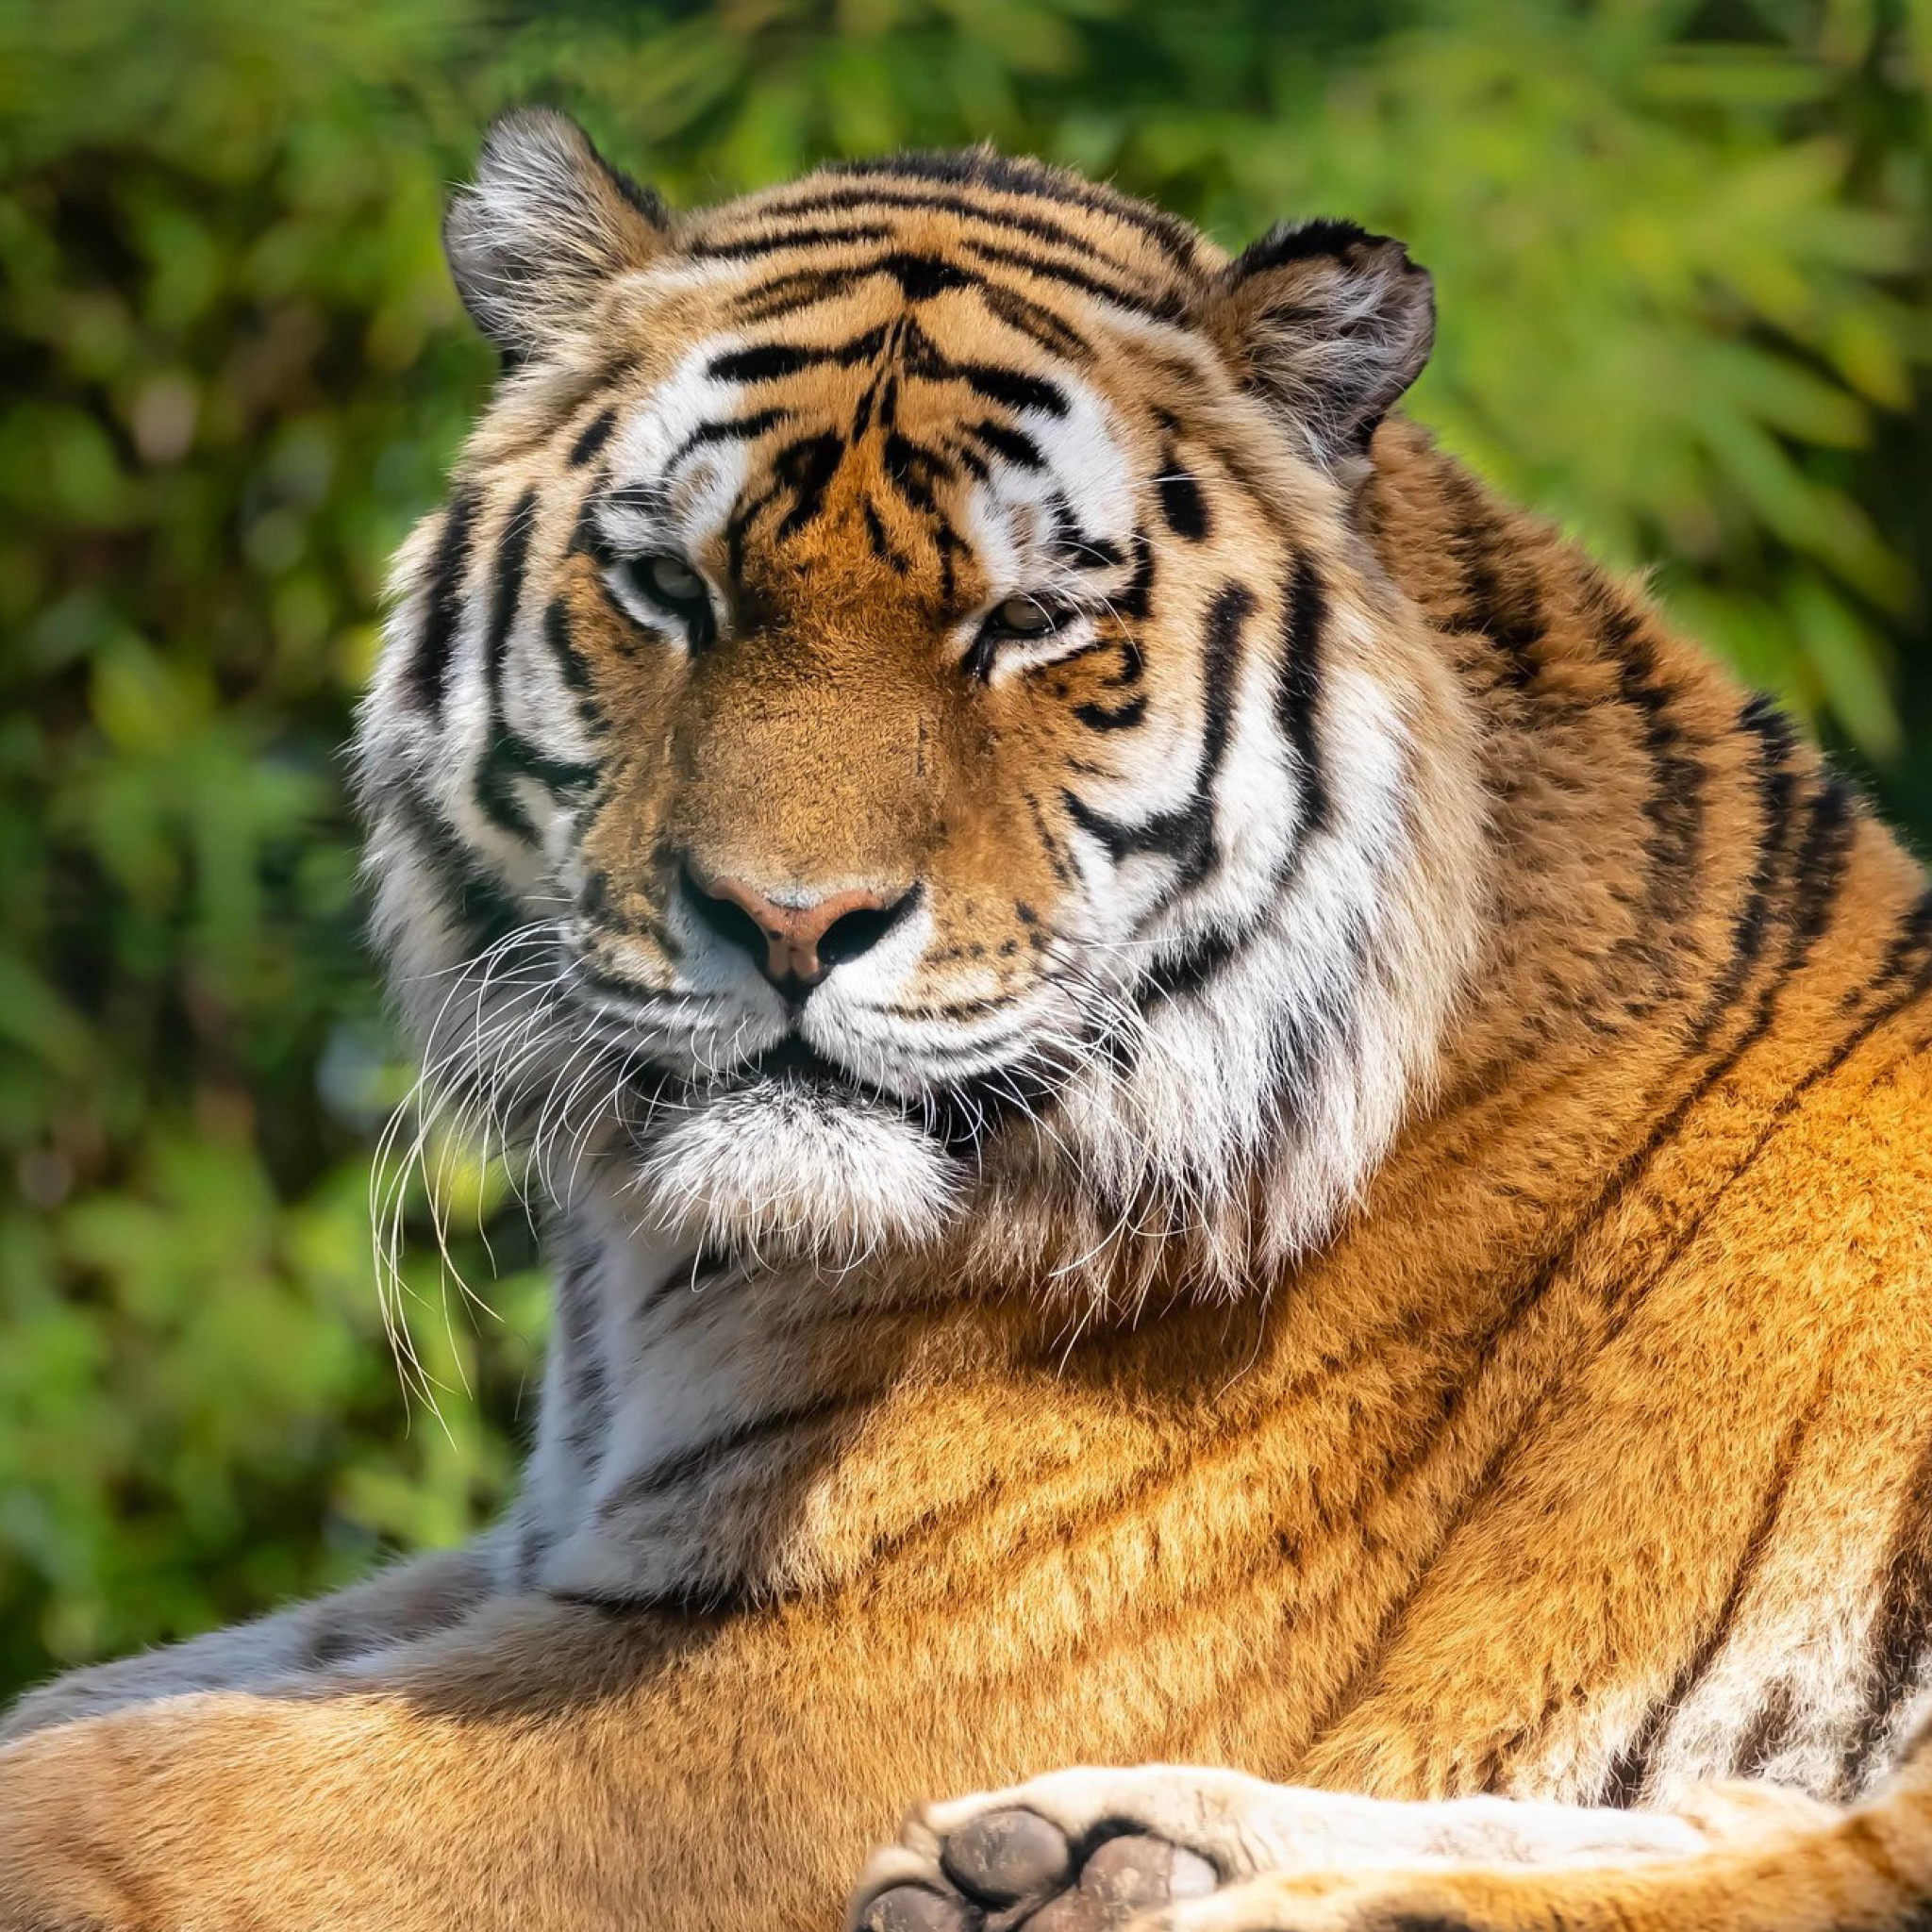 Malay Tiger at the New York Zoo screenshot #1 2048x2048